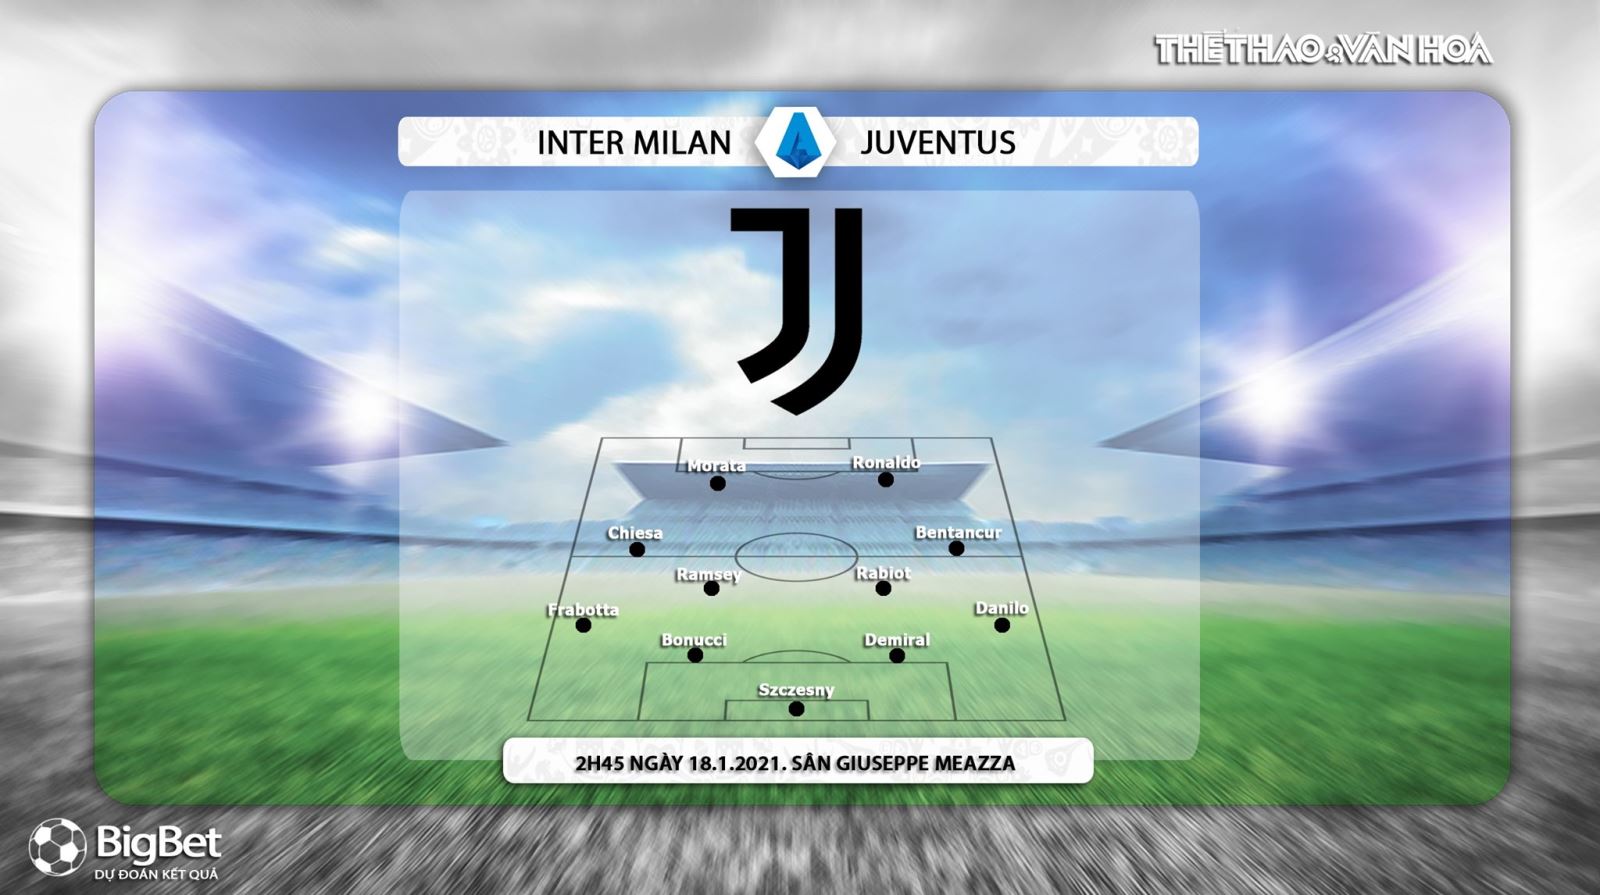 Keo nha cai, nhận định kết quả, Inter vs Juventus. Xem trực tiếp Juve đấu với Inter, Nhận định bóng đá Inter vs Juventus, Vòng 16 Serie A, Trực tiếp FPT Play, Kèo Juventus, Kèo Inter